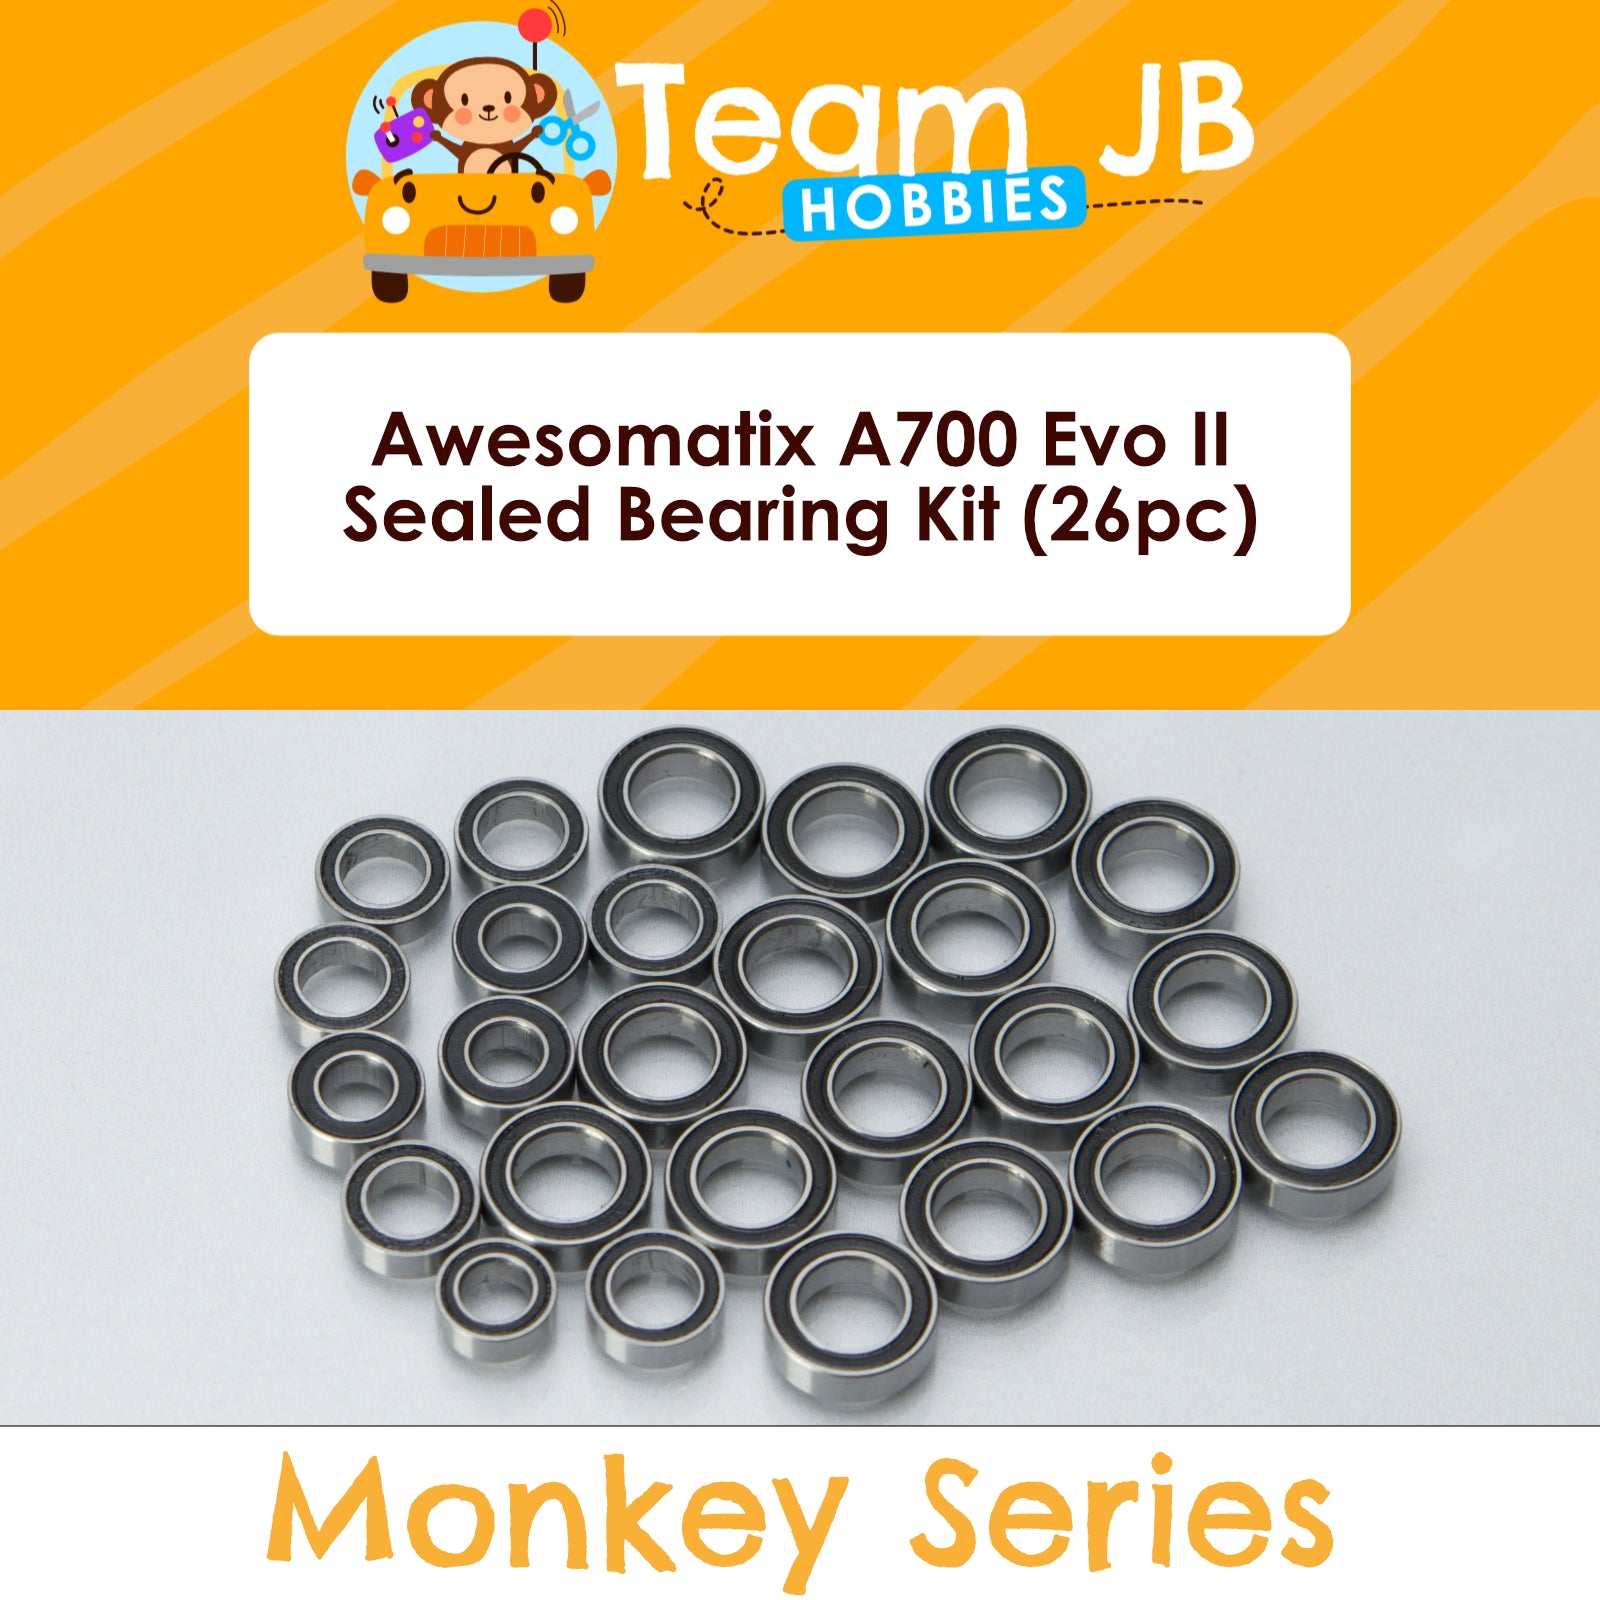 Awesomatix A700 Evo II - Sealed Bearing Kit